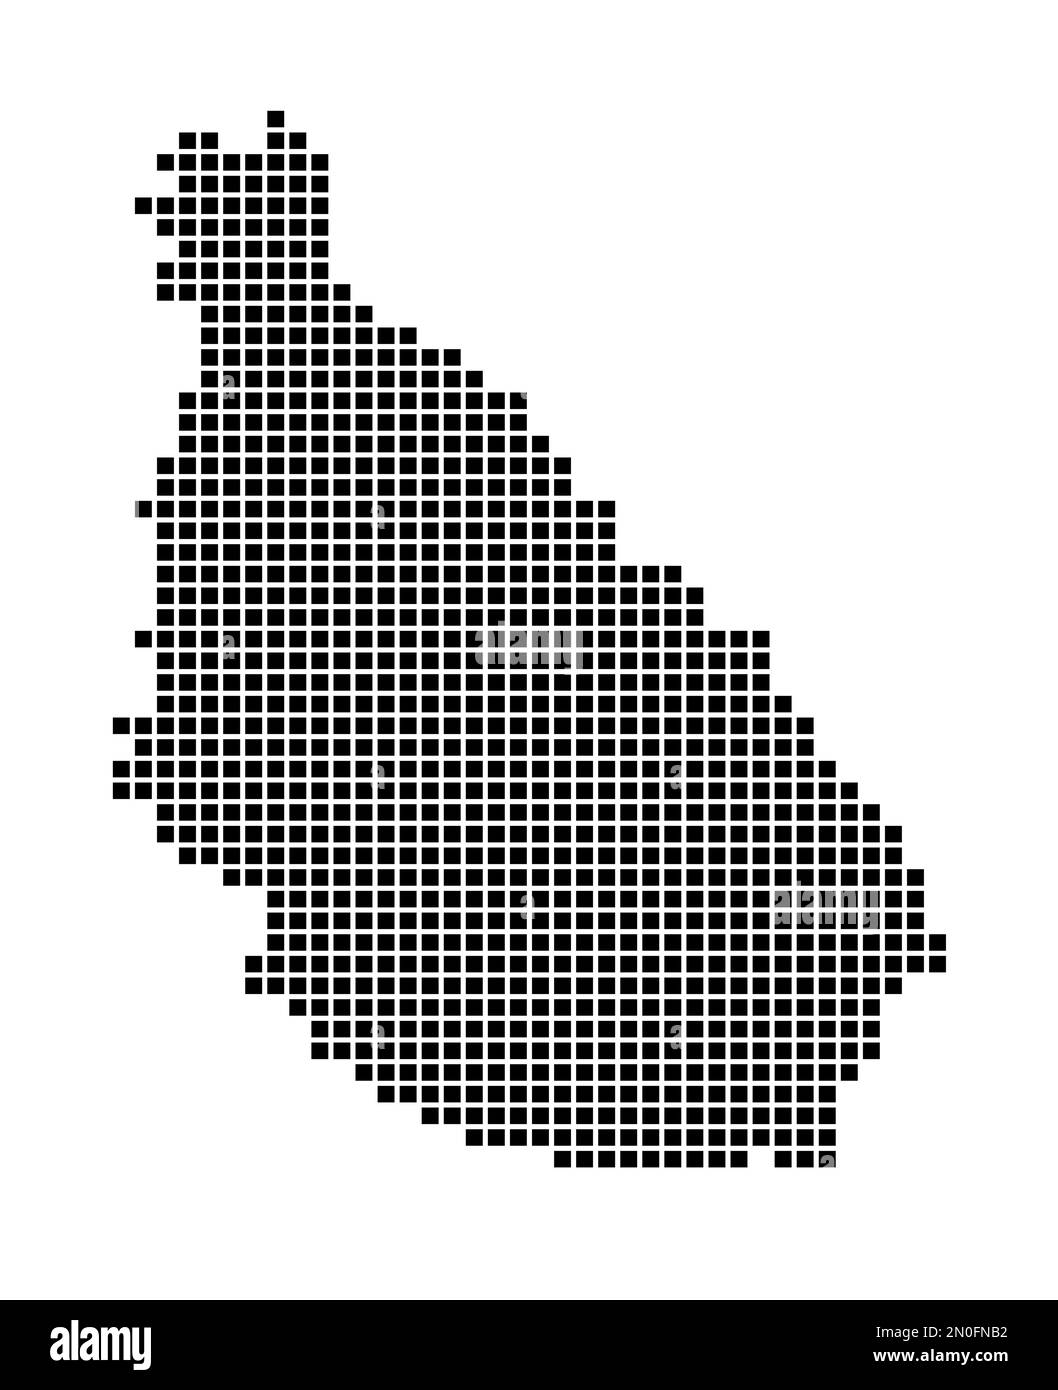 Mappa dell'isola di Santiago. Mappa dell'isola di Santiago in stile punteggiato. Bordi dell'isola riempiti di rettangoli per il vostro disegno. Illustrazione vettoriale. Illustrazione Vettoriale